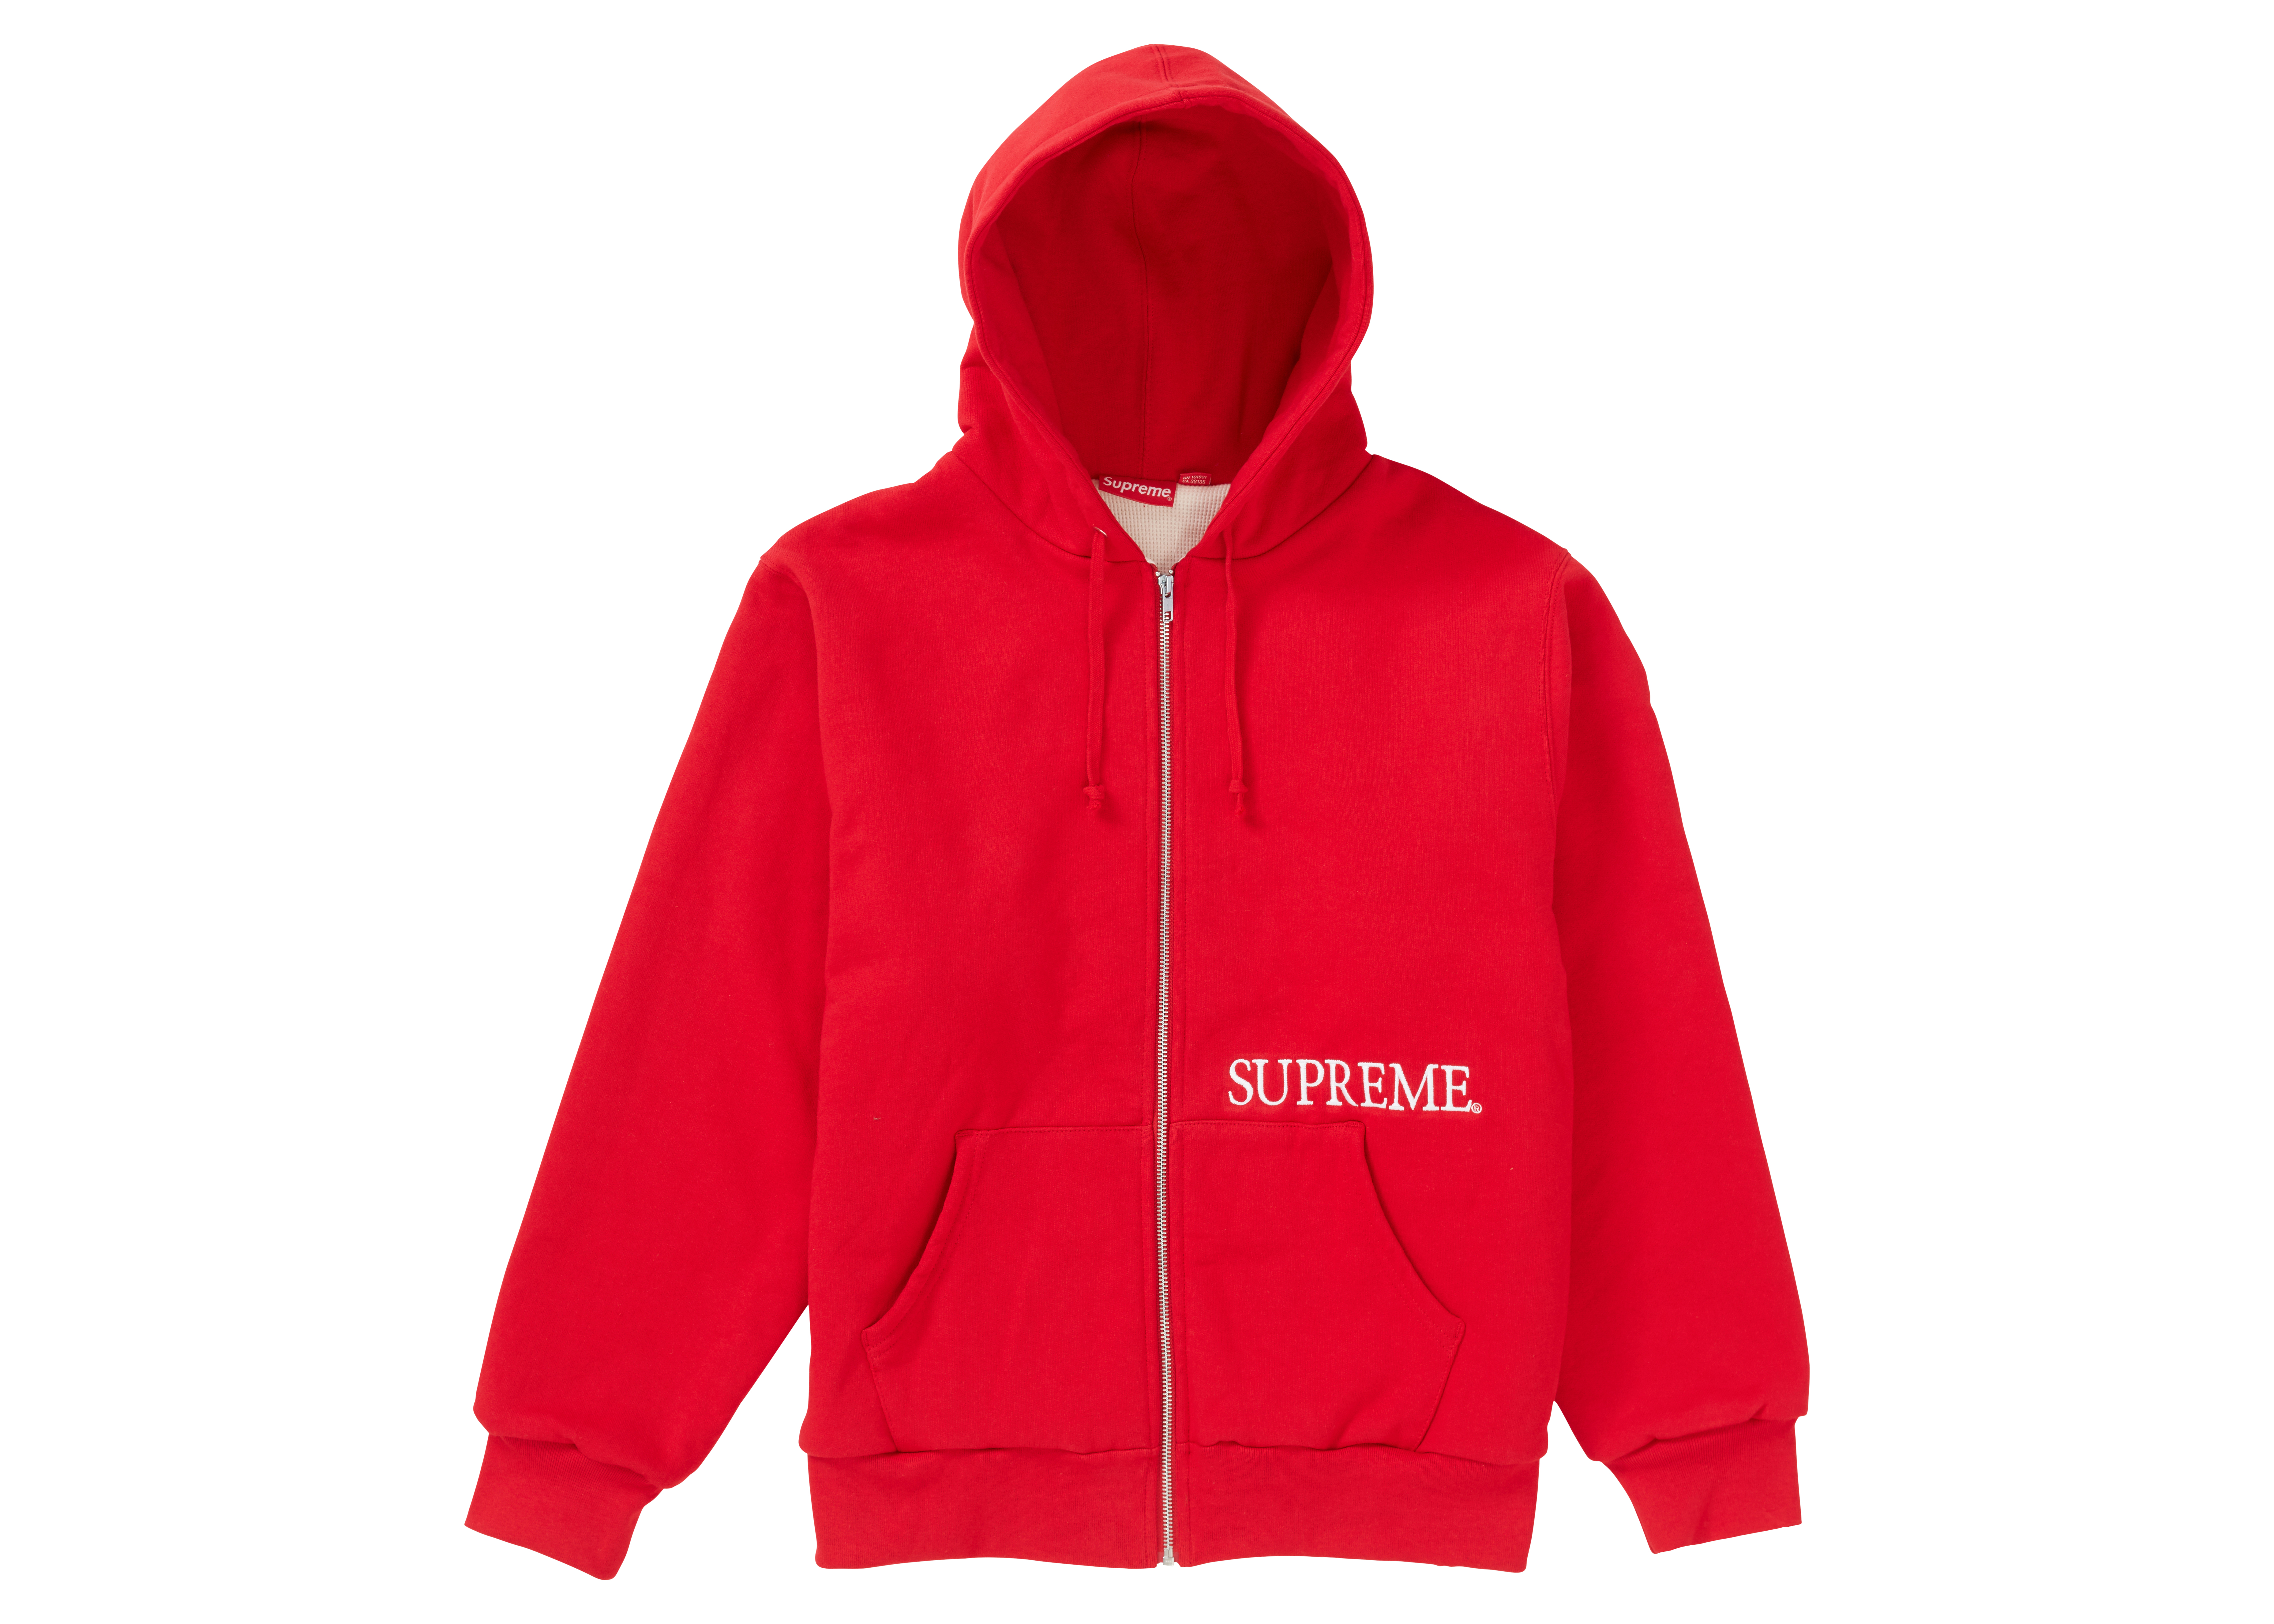 Supreme Thermal Zip Up Hooded Sweatshirt Red - FW19 - US